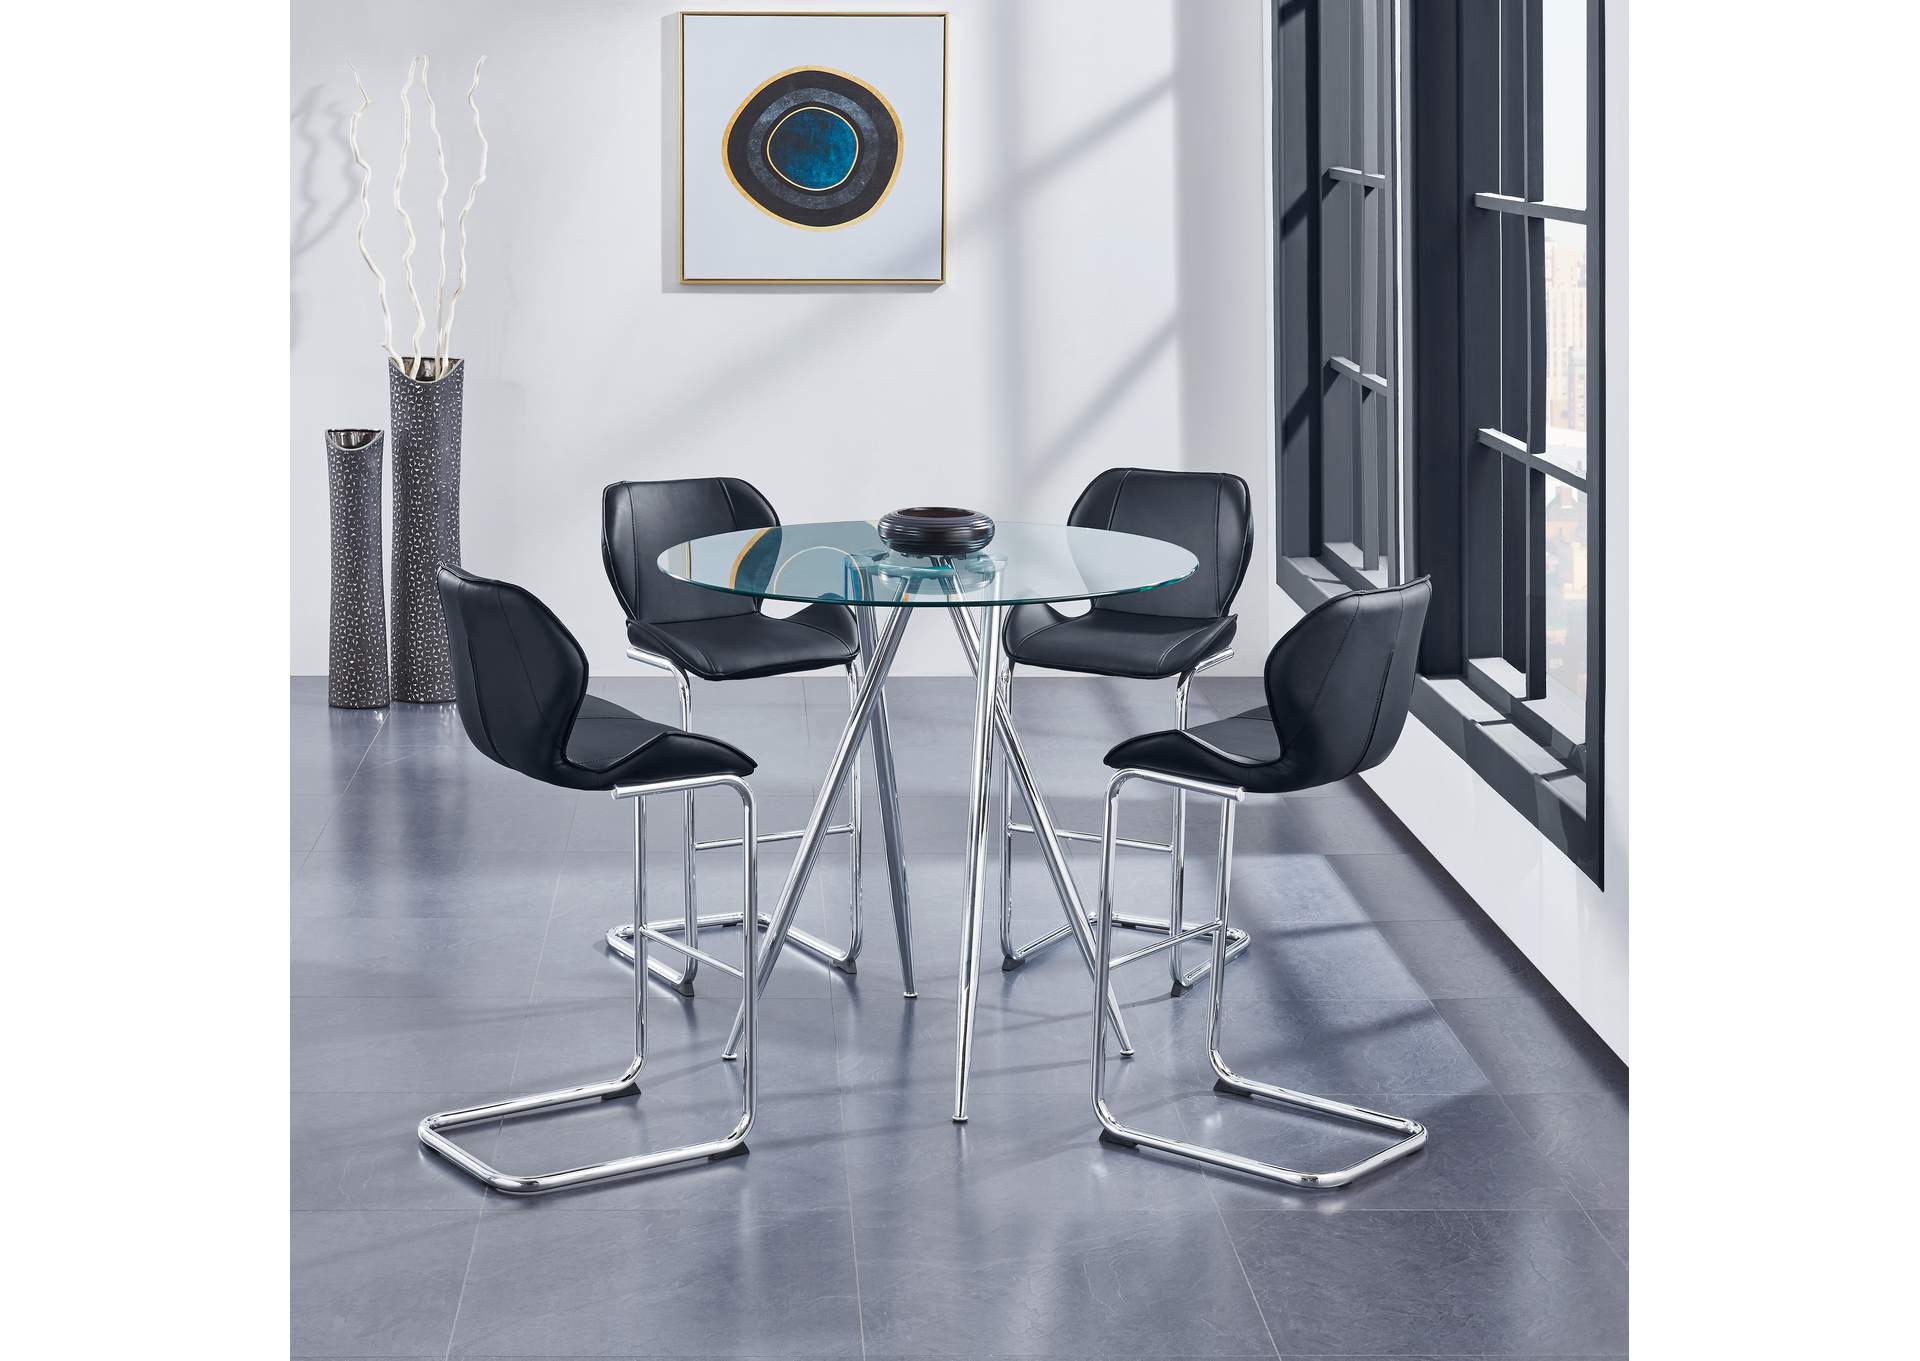 Chrome Bar Table,Global Furniture USA